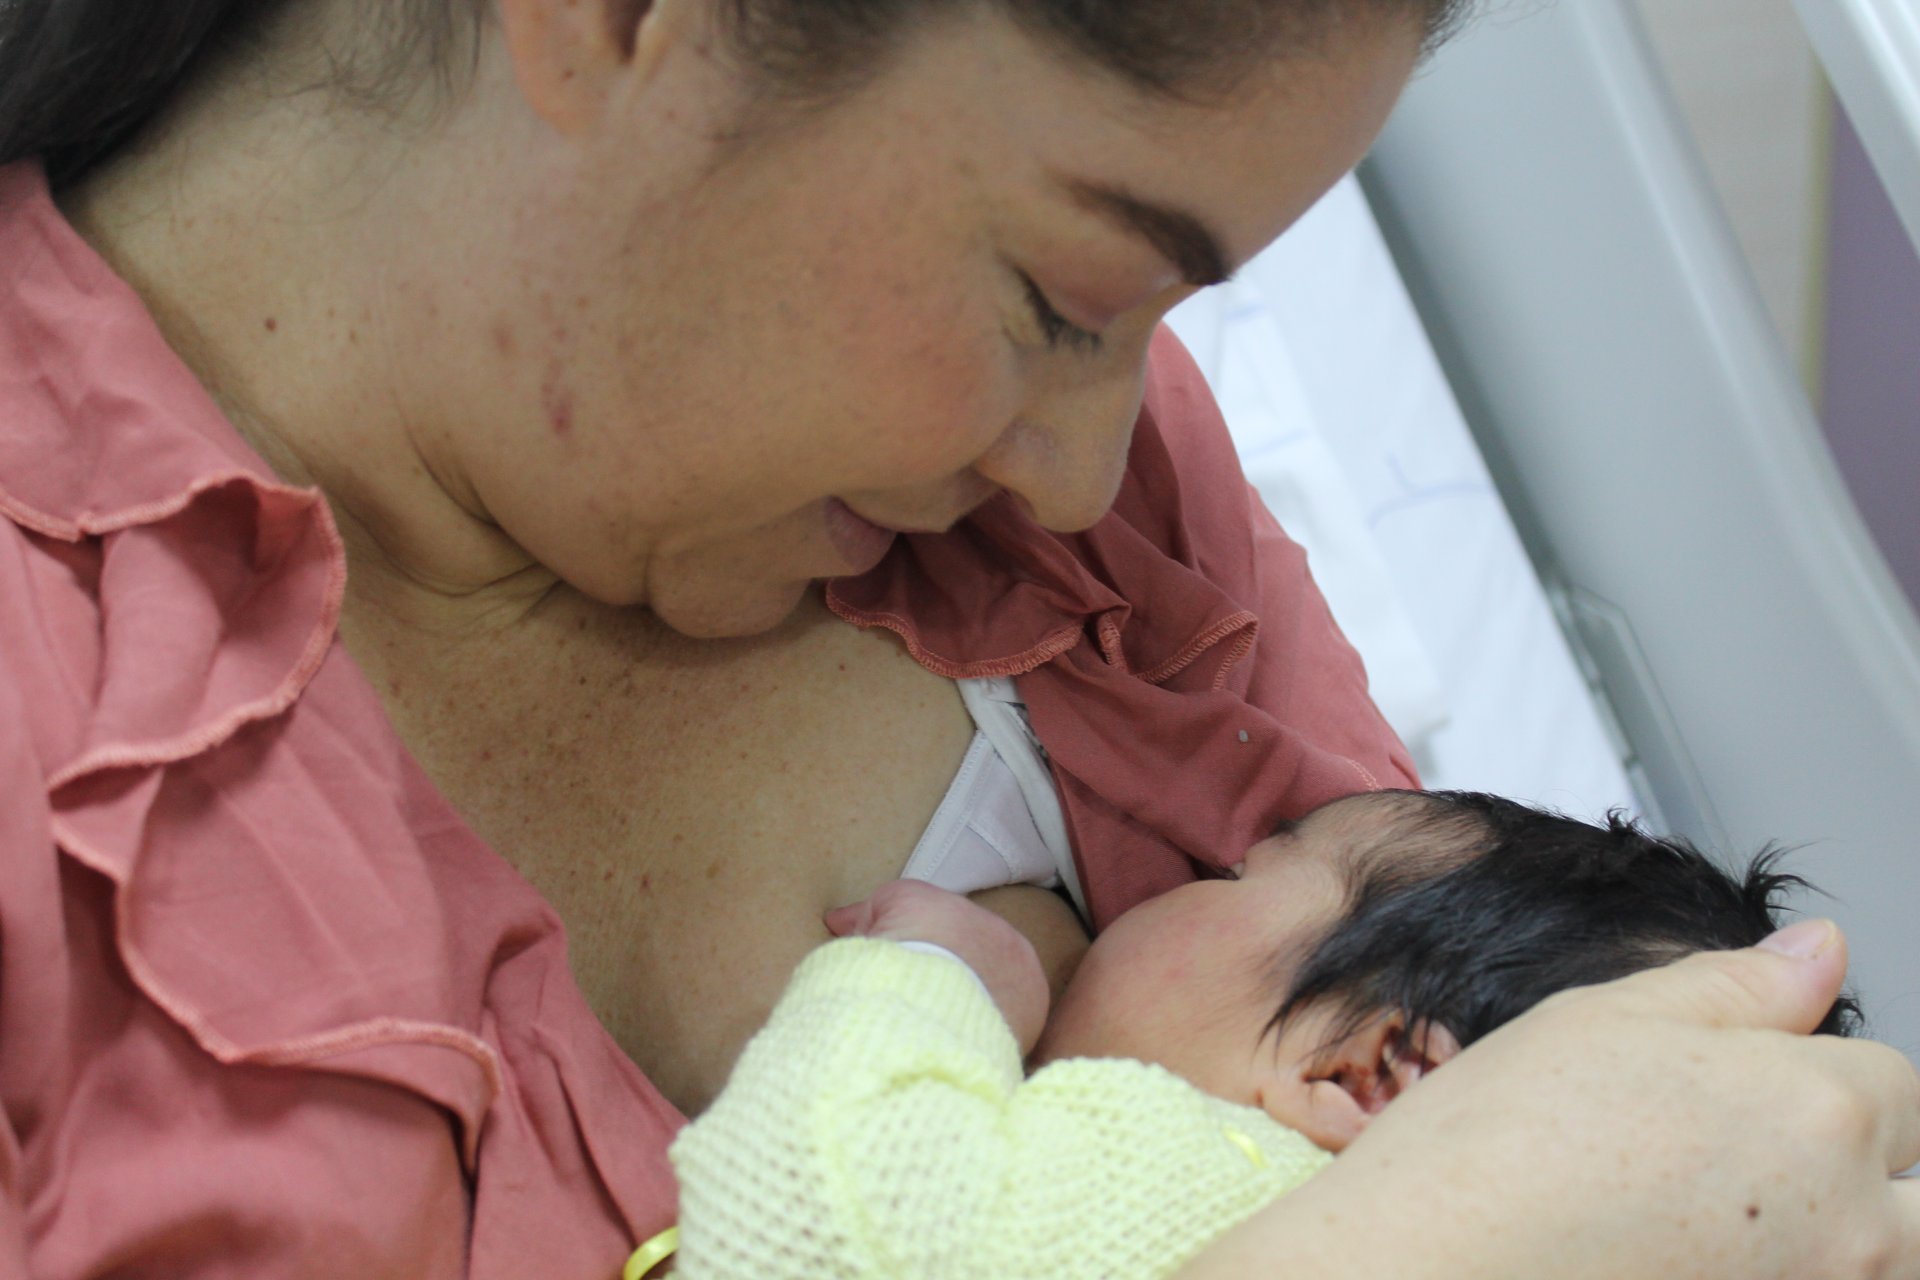 La lactancia materna es fundamental para el adecuado desarrollo del bebé, por esto debe brindarse lactancia materna exclusiva hasta los 6 meses de edad.